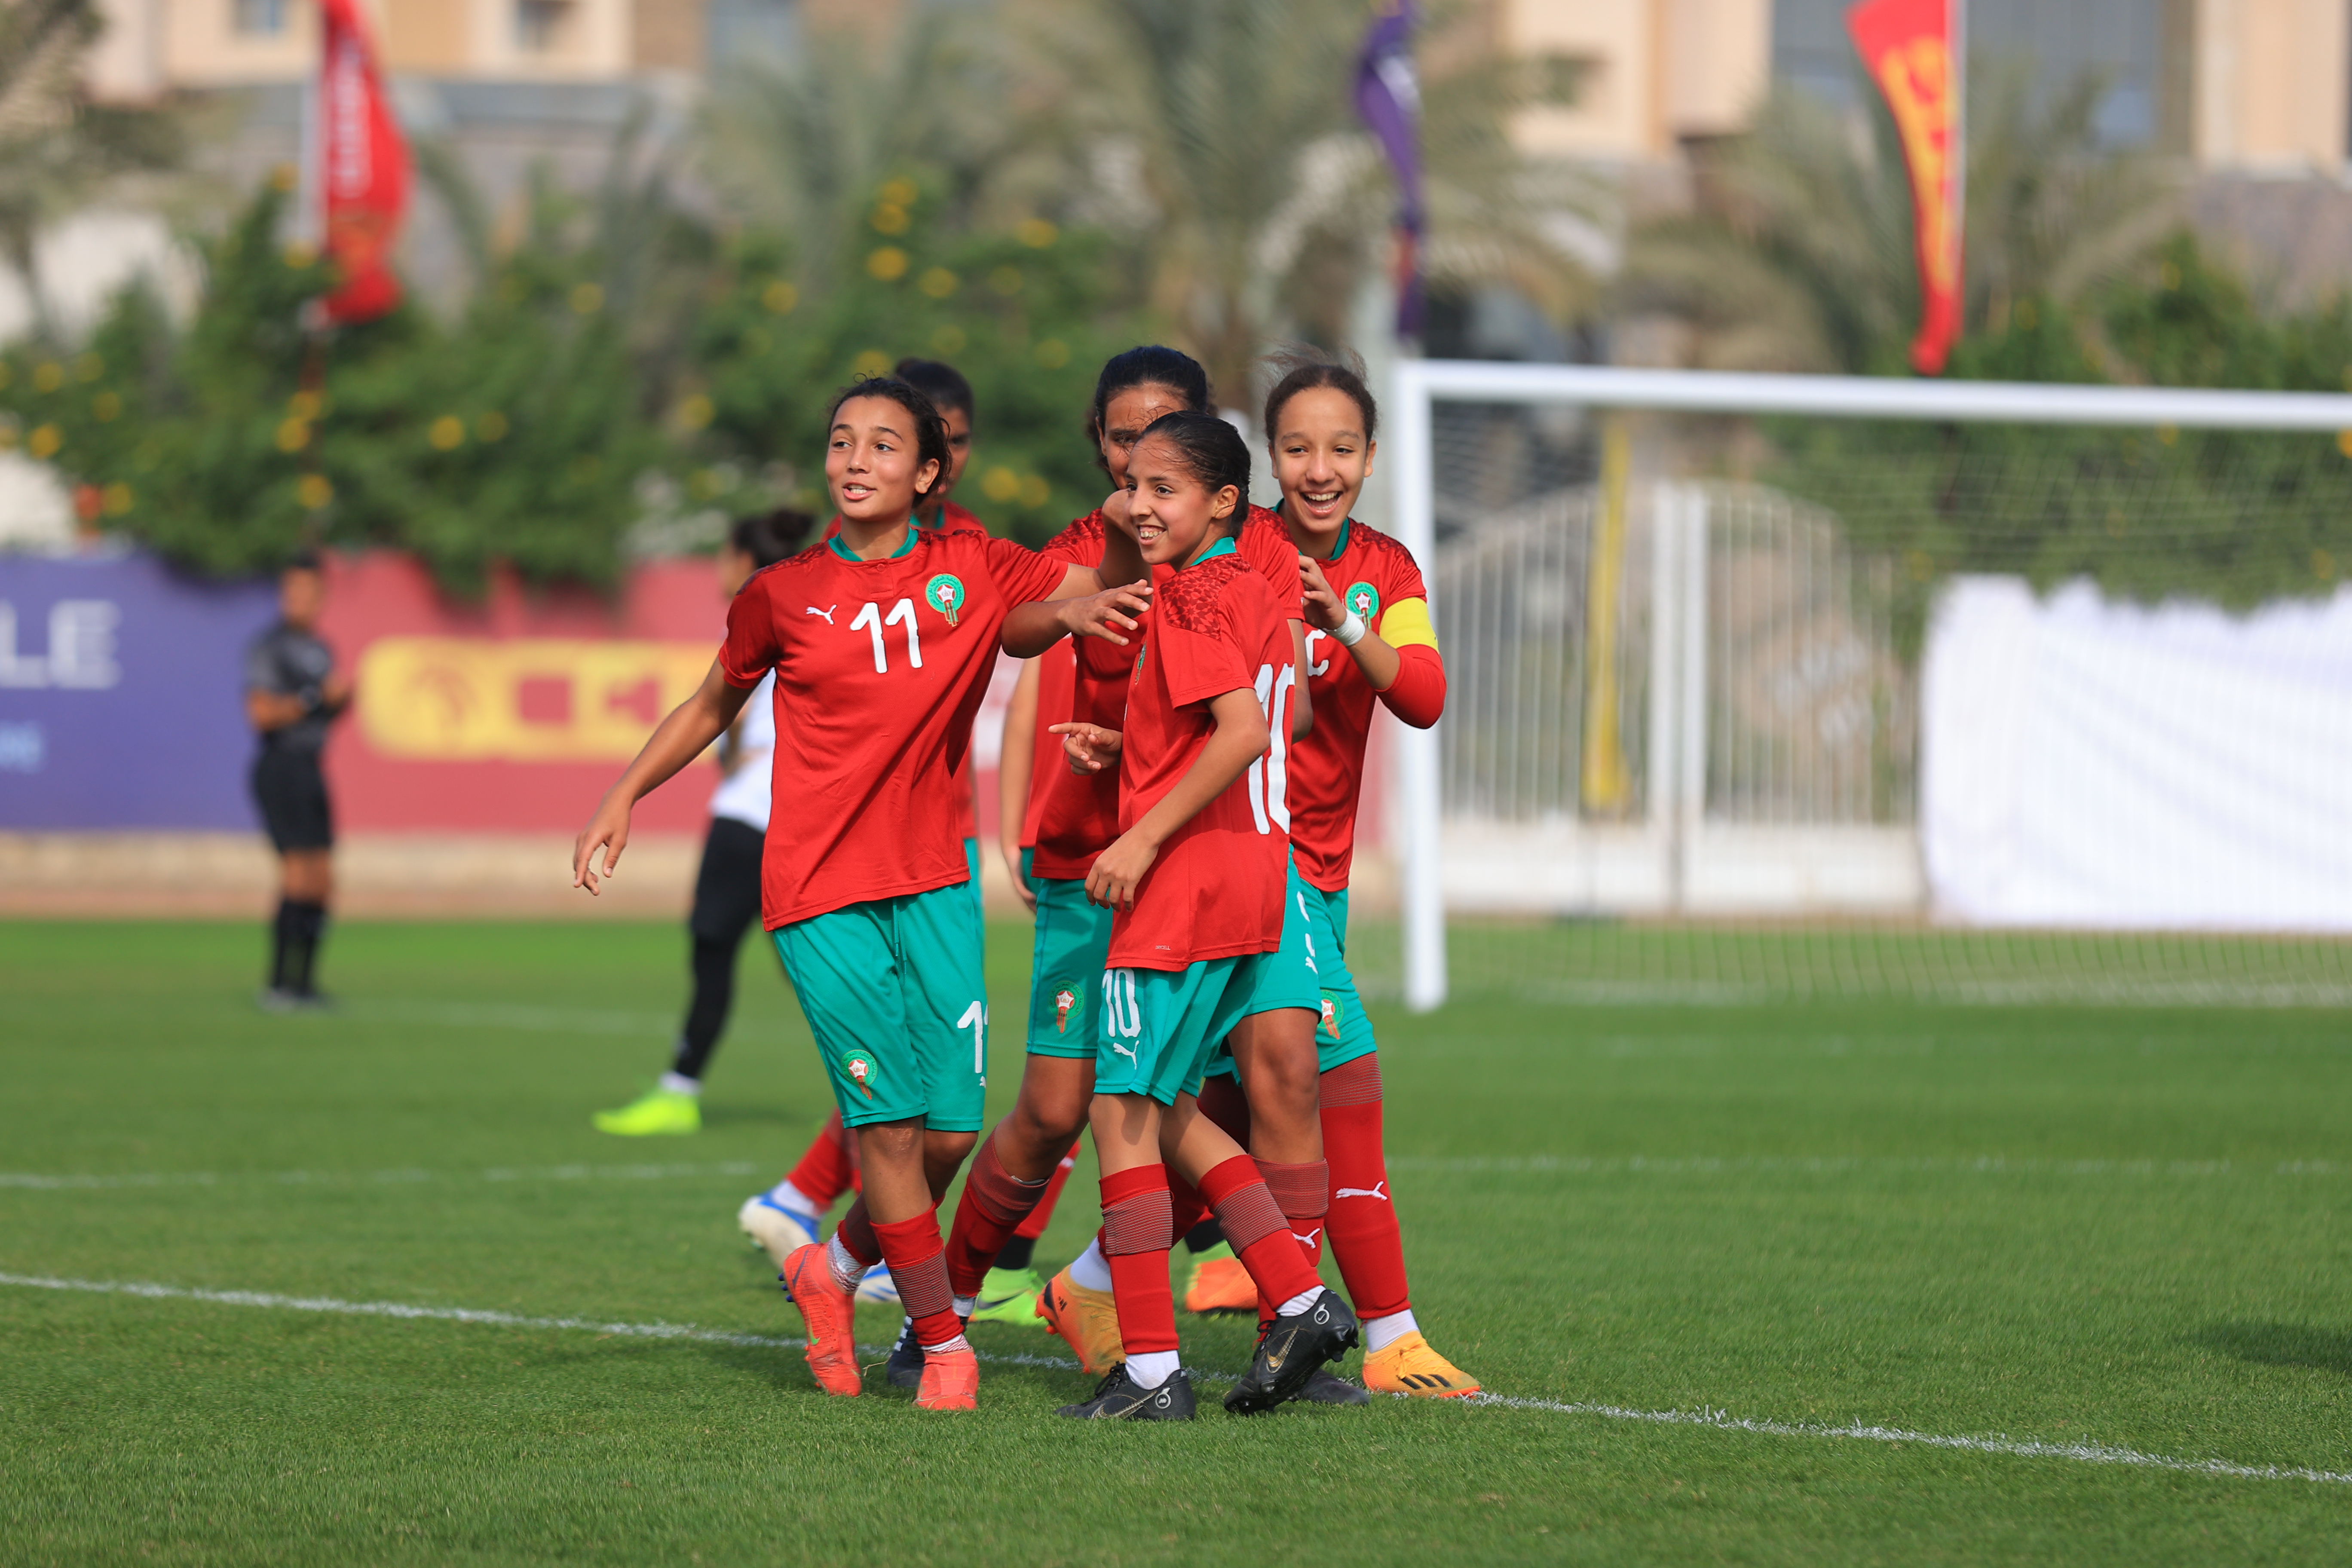 Libya, Morocco to represent UNAF at CAF African Schools Football Championship Finals  
